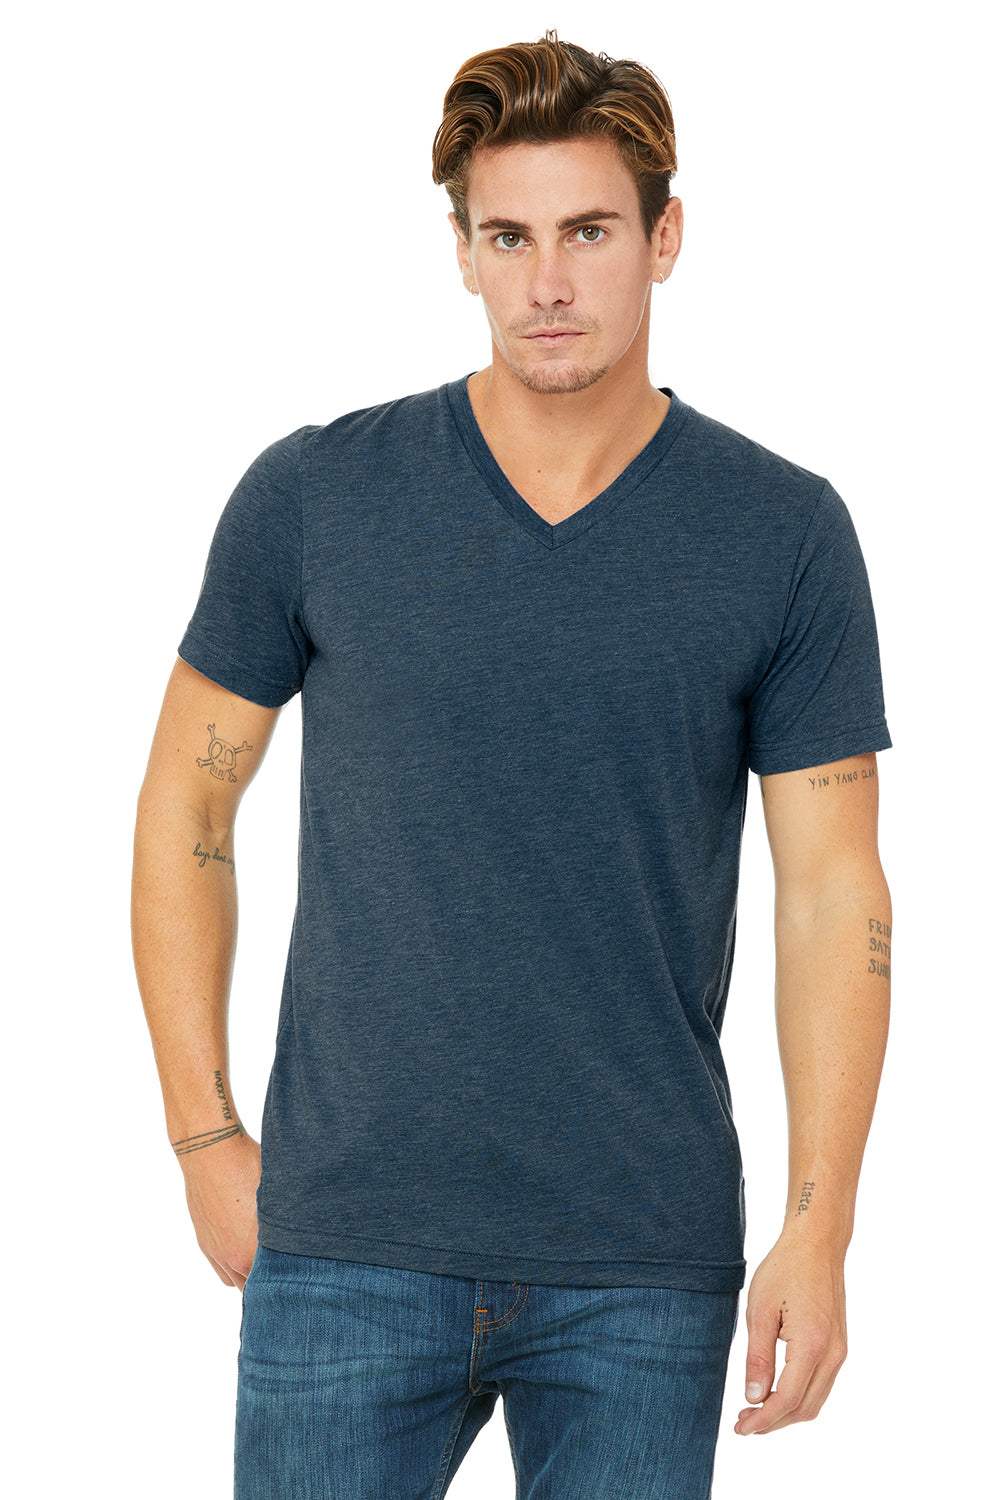 Bella + Canvas 3415C Mens Short Sleeve V-Neck T-Shirt Steel Blue Front